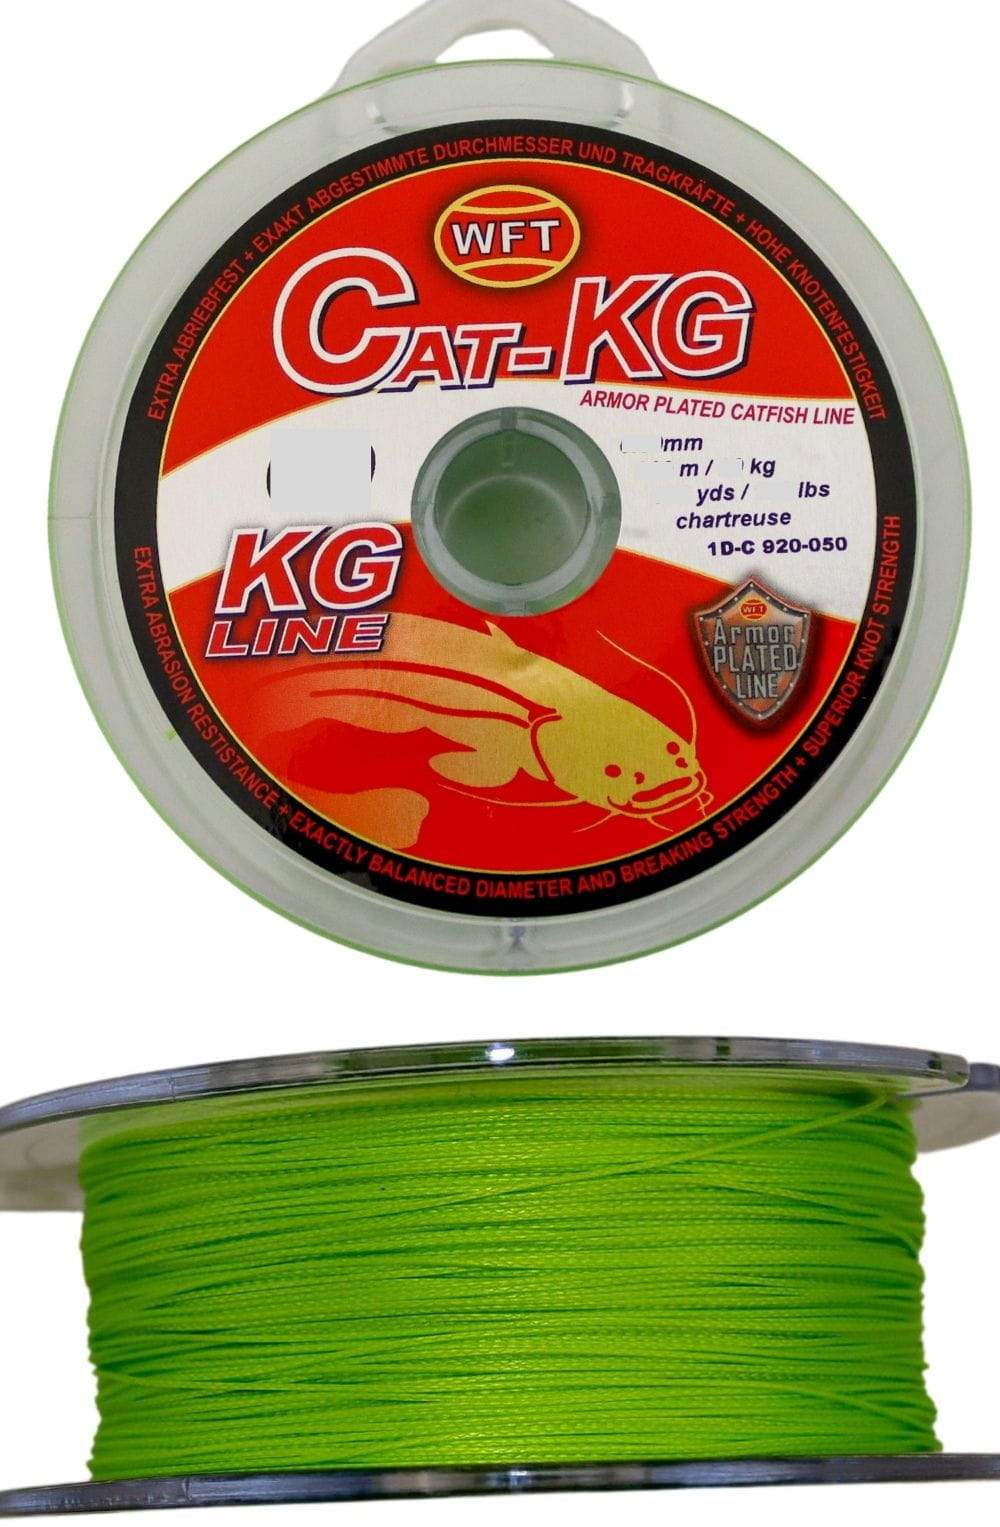 WFT CAT-KG 0,60 mm 300 m 80 kg Chartreuse